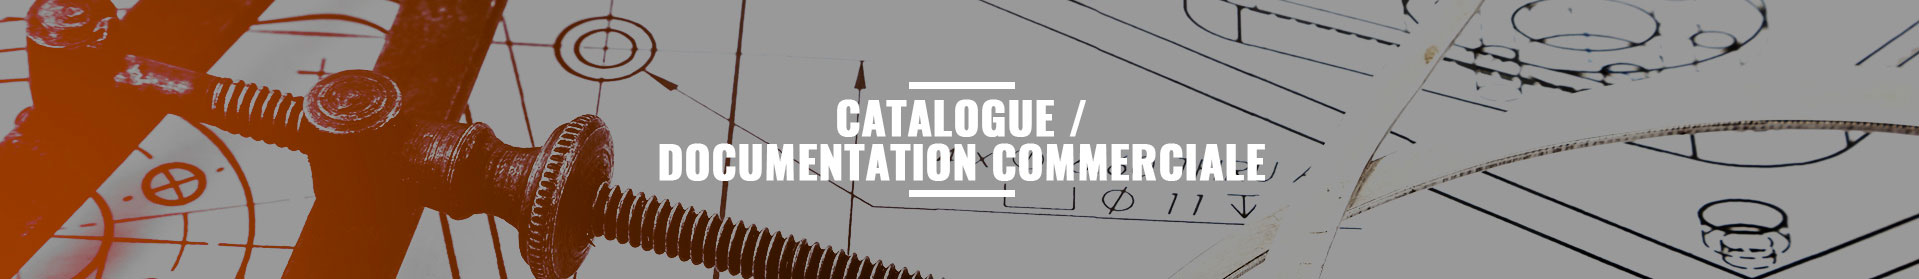 Catalogue/documentation commerciale